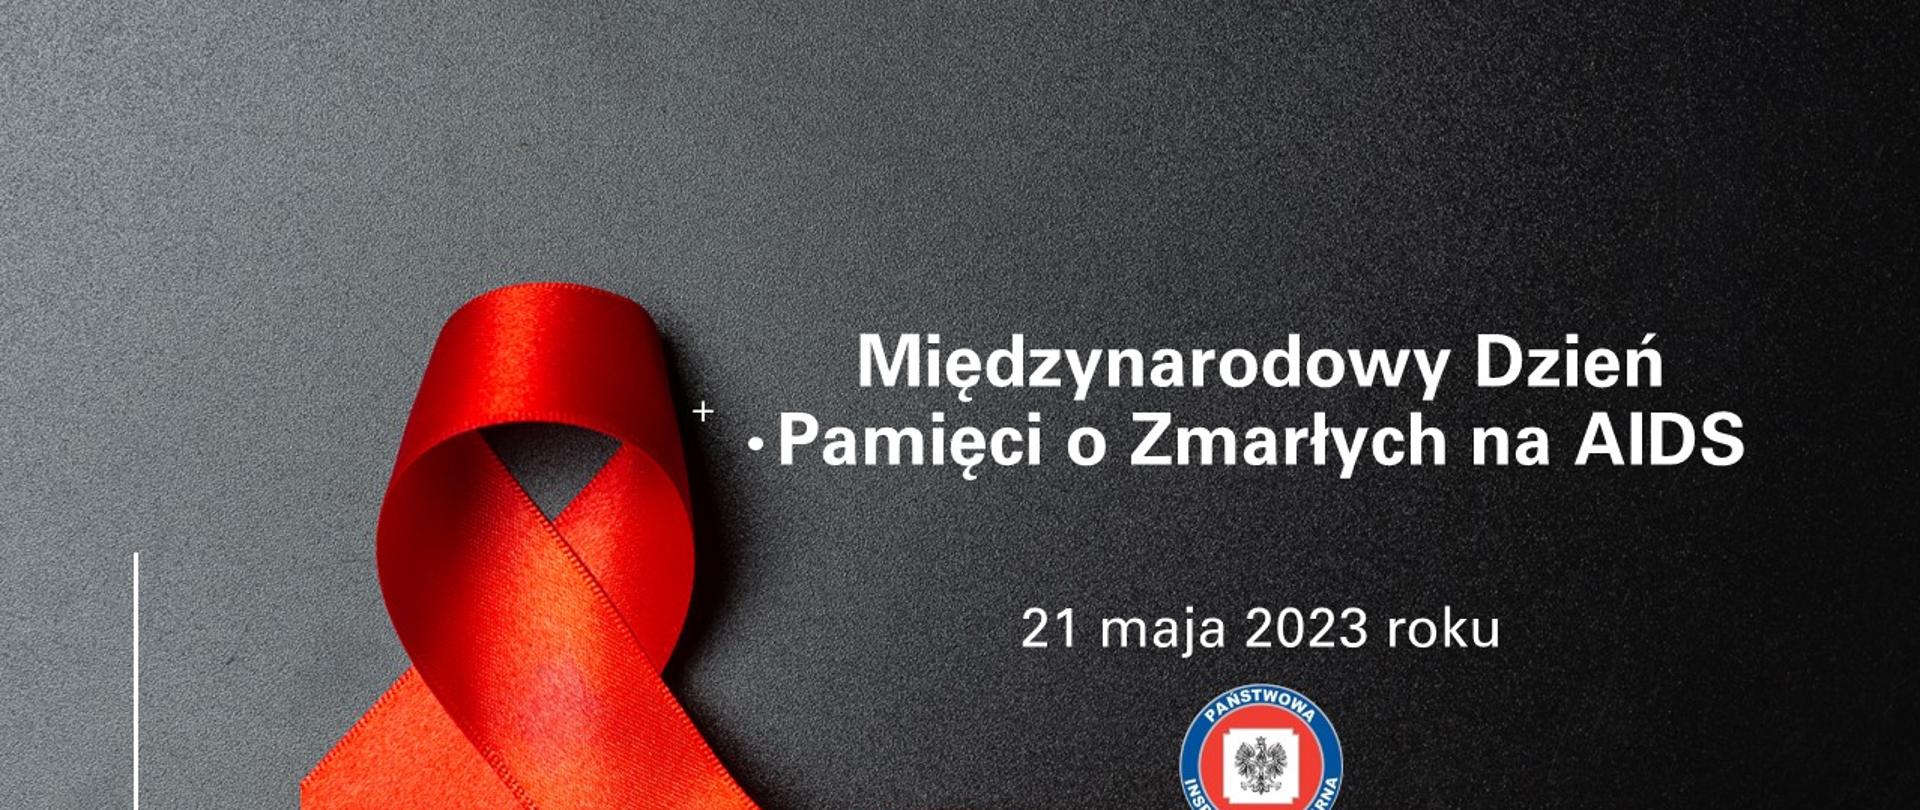 Międzynarodowy Dzień Pamięci Zmarłych na AIDS 